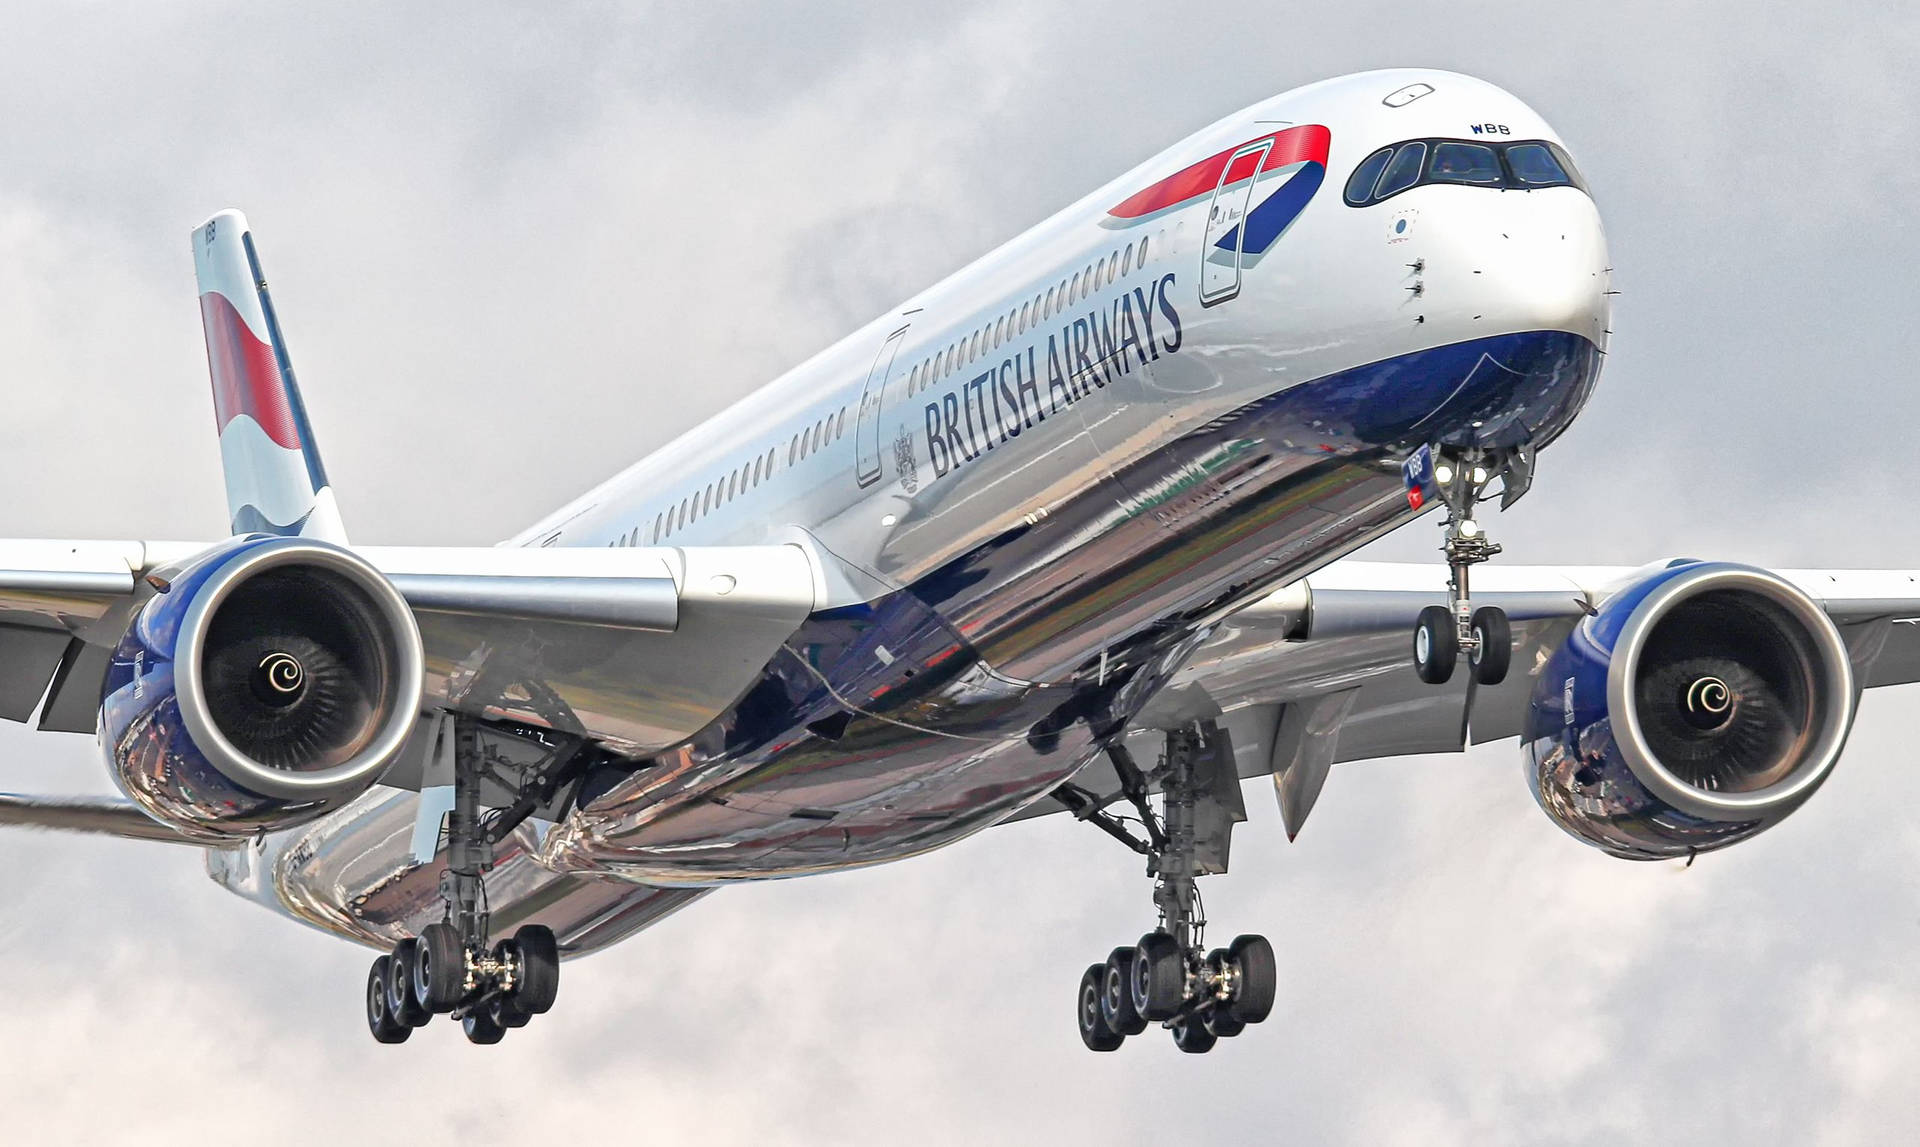 Fliegendeairbus A350 Von British Airways Wallpaper